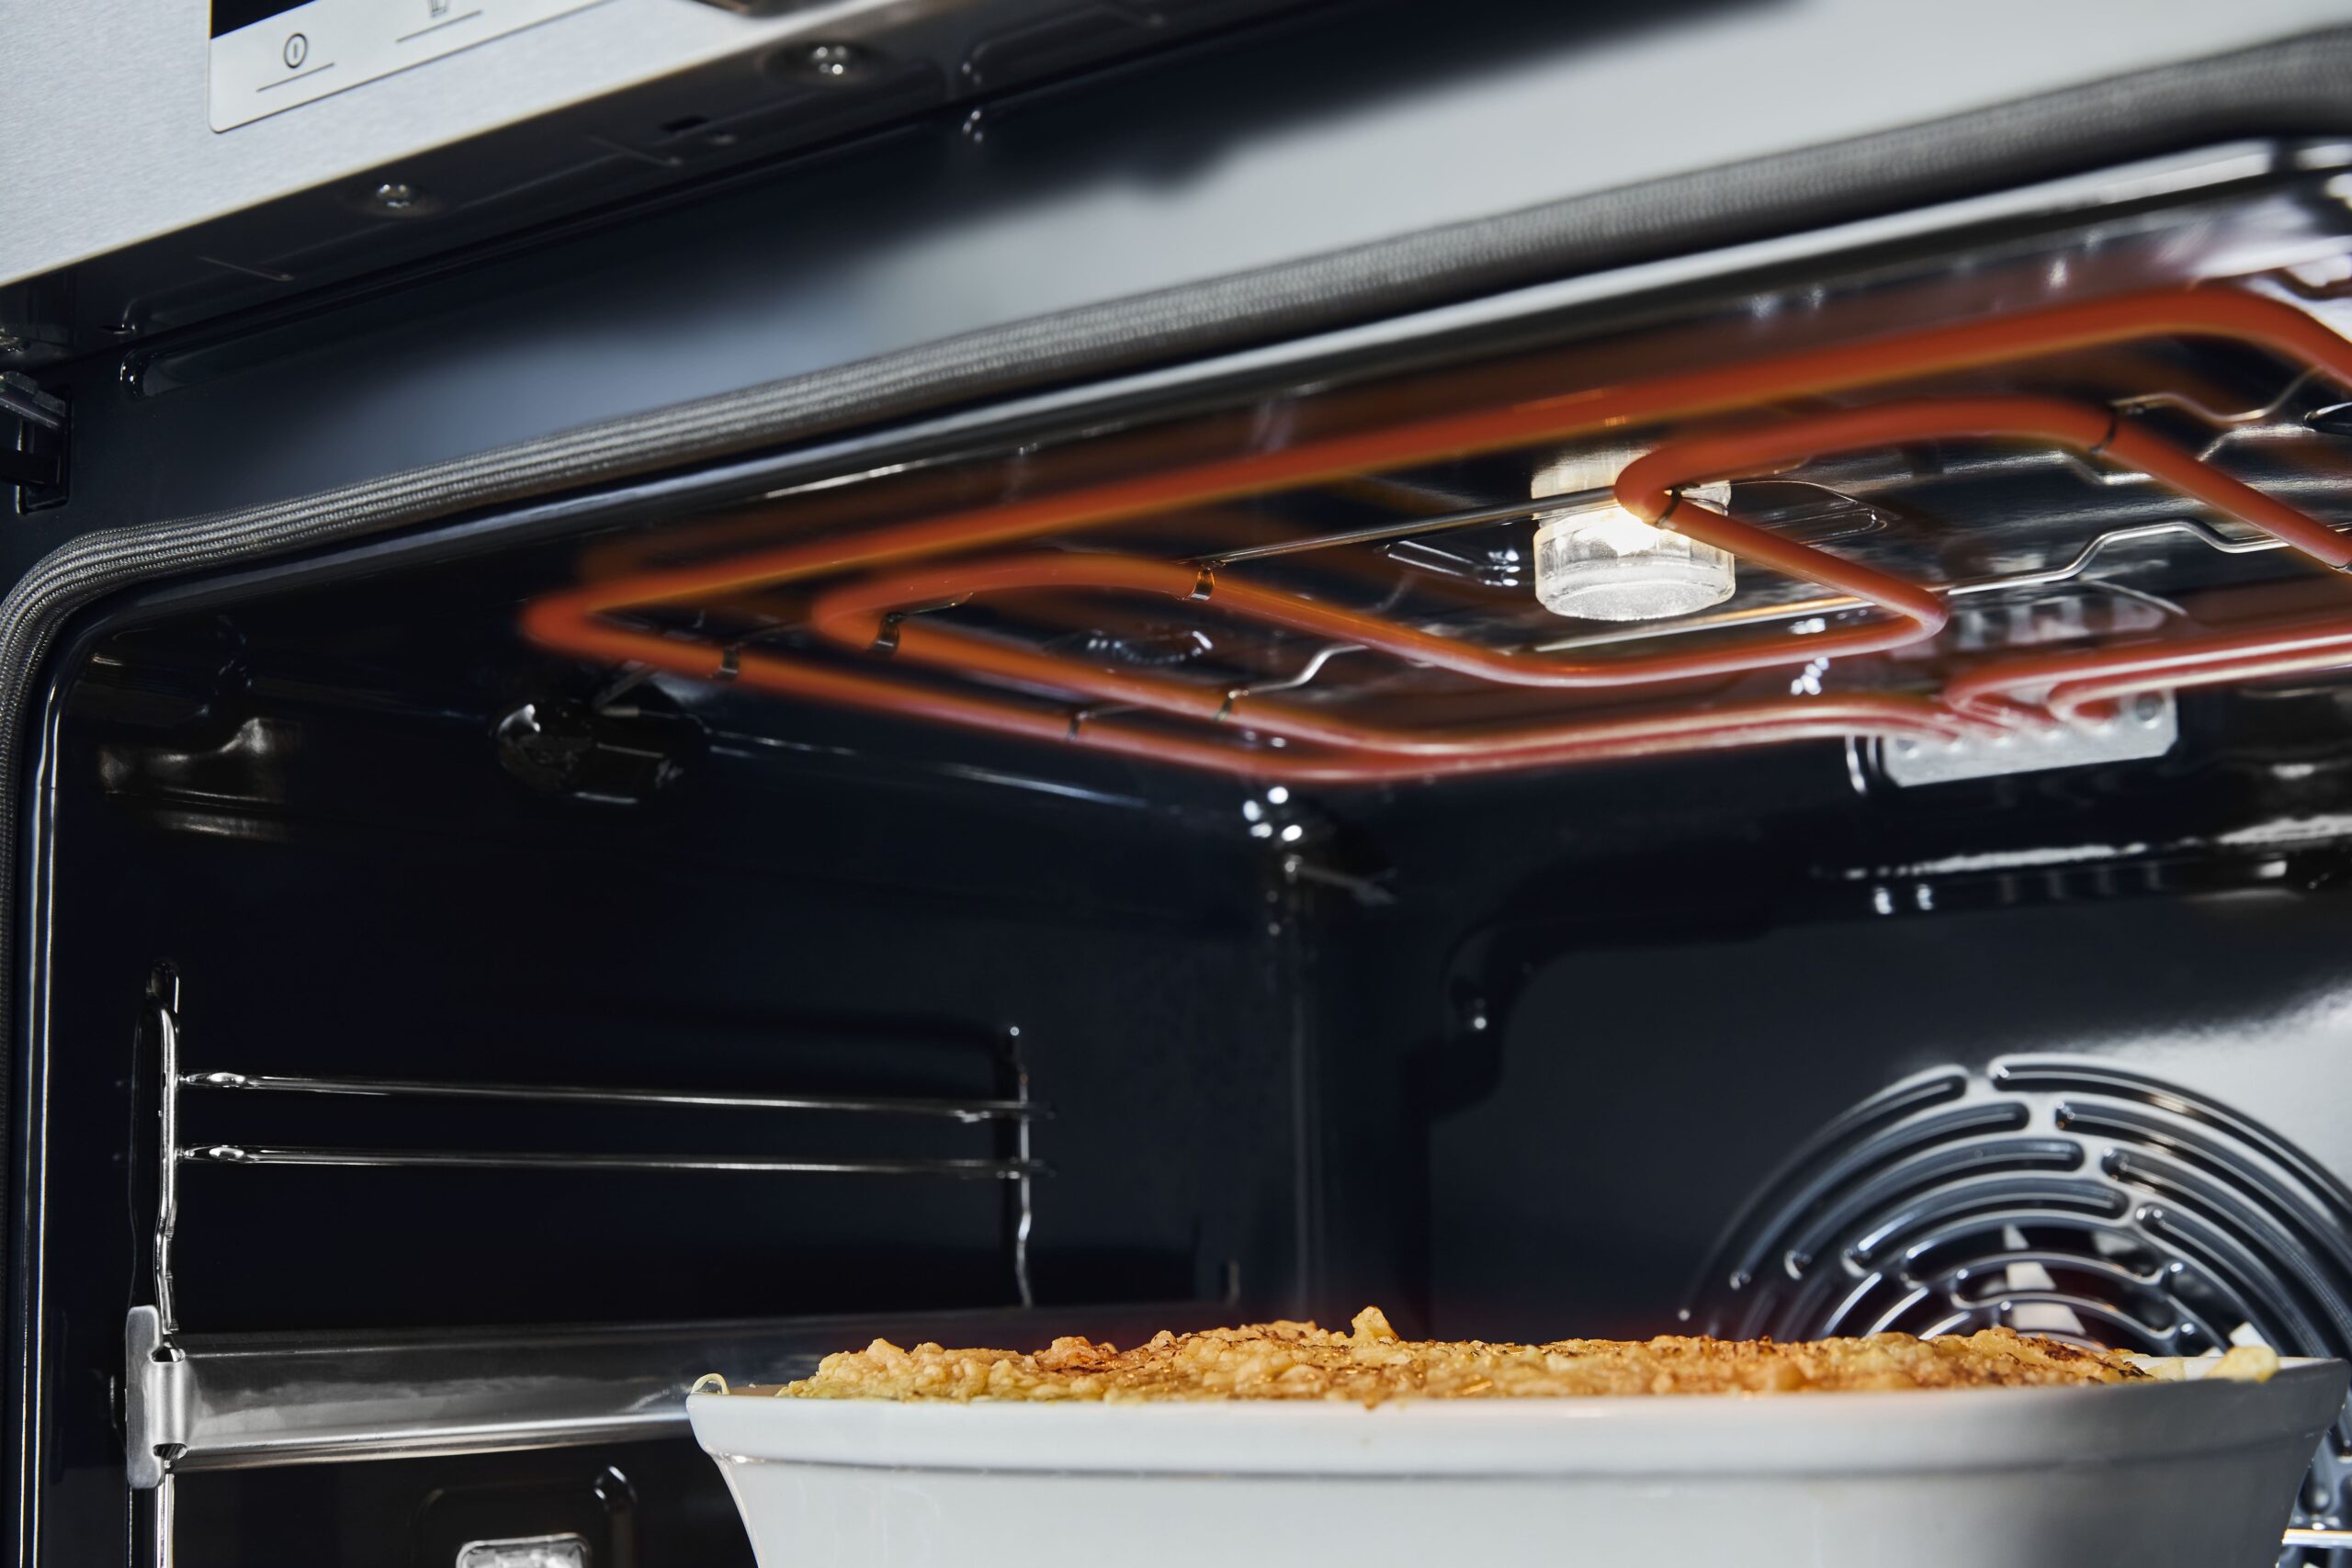 inox ventola XXL Pizza mode 300° capacità 77 l porte removibili cucina simulanea 5 livelli Hisense BSA65211CX Forno multifunzione con vapore e funzione friggitrice d'aria senza olio 